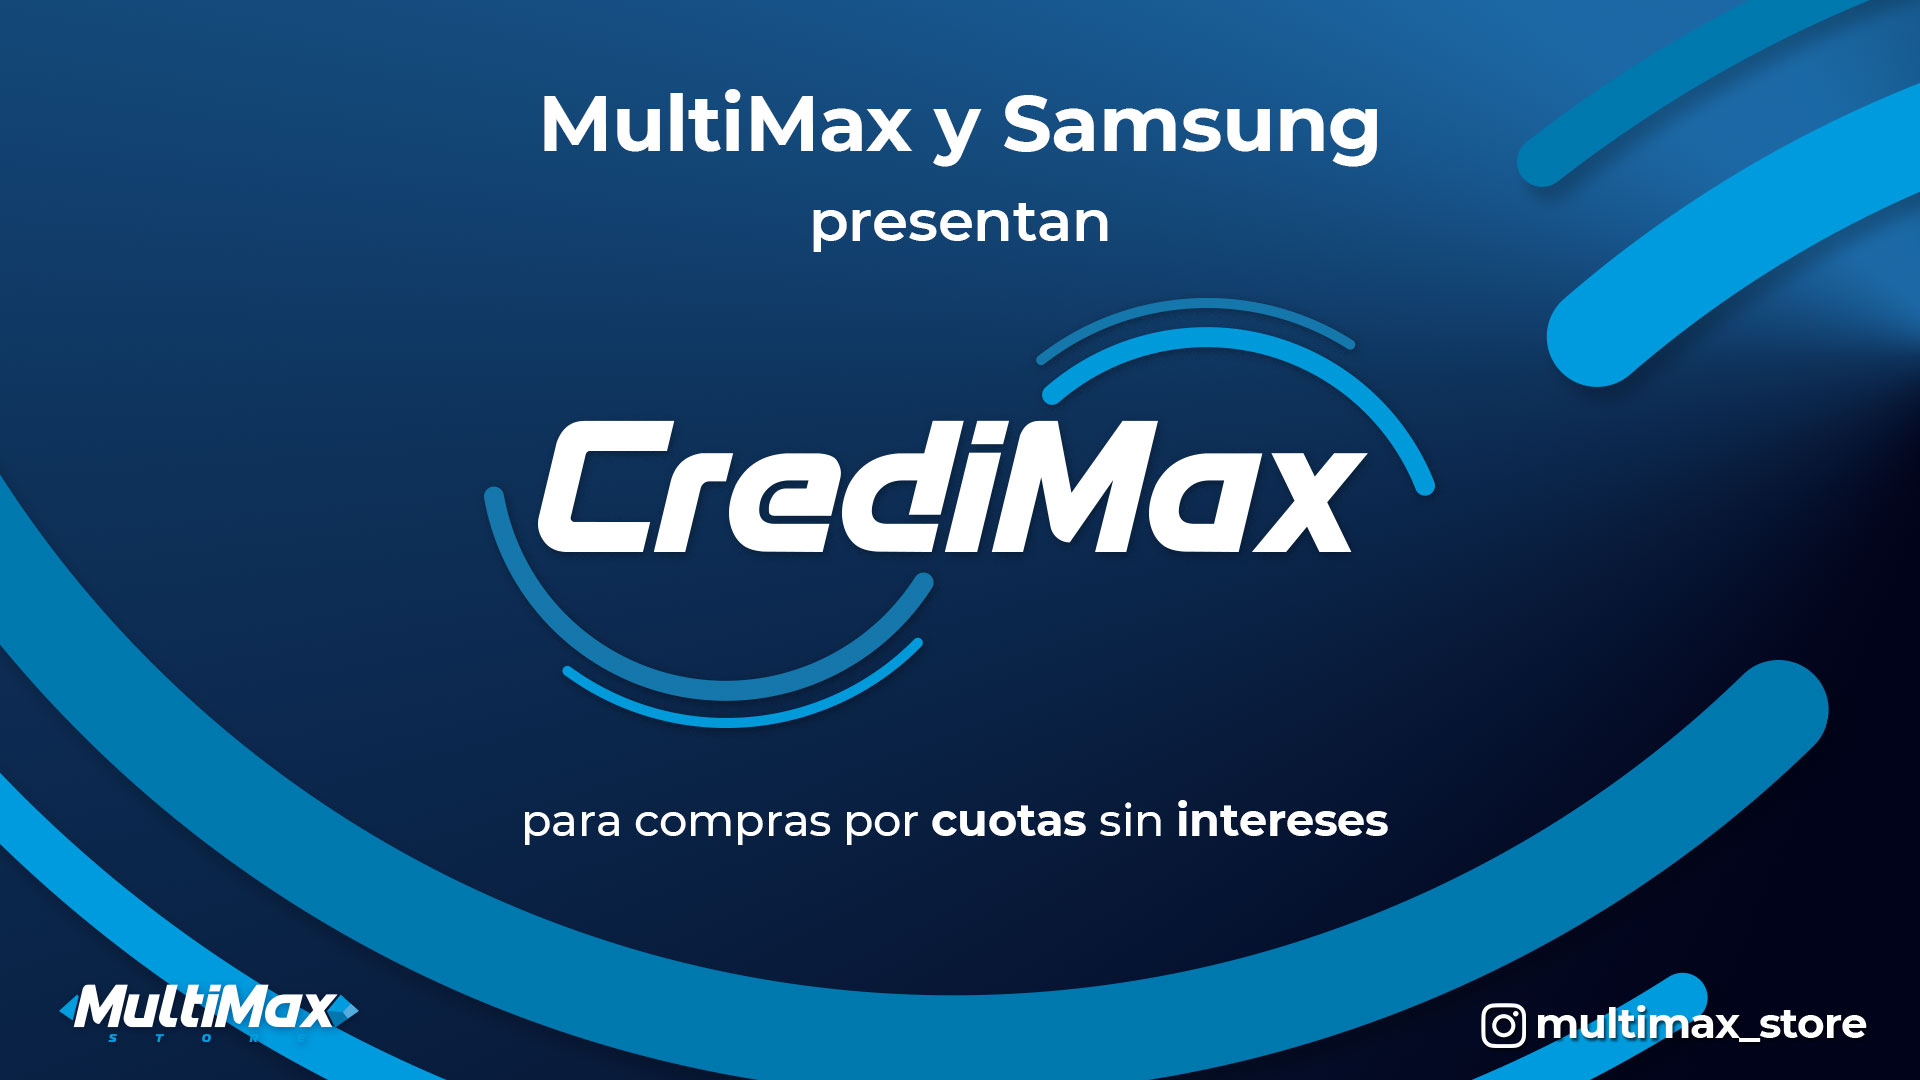 CrediMax de Samsung y Multimax